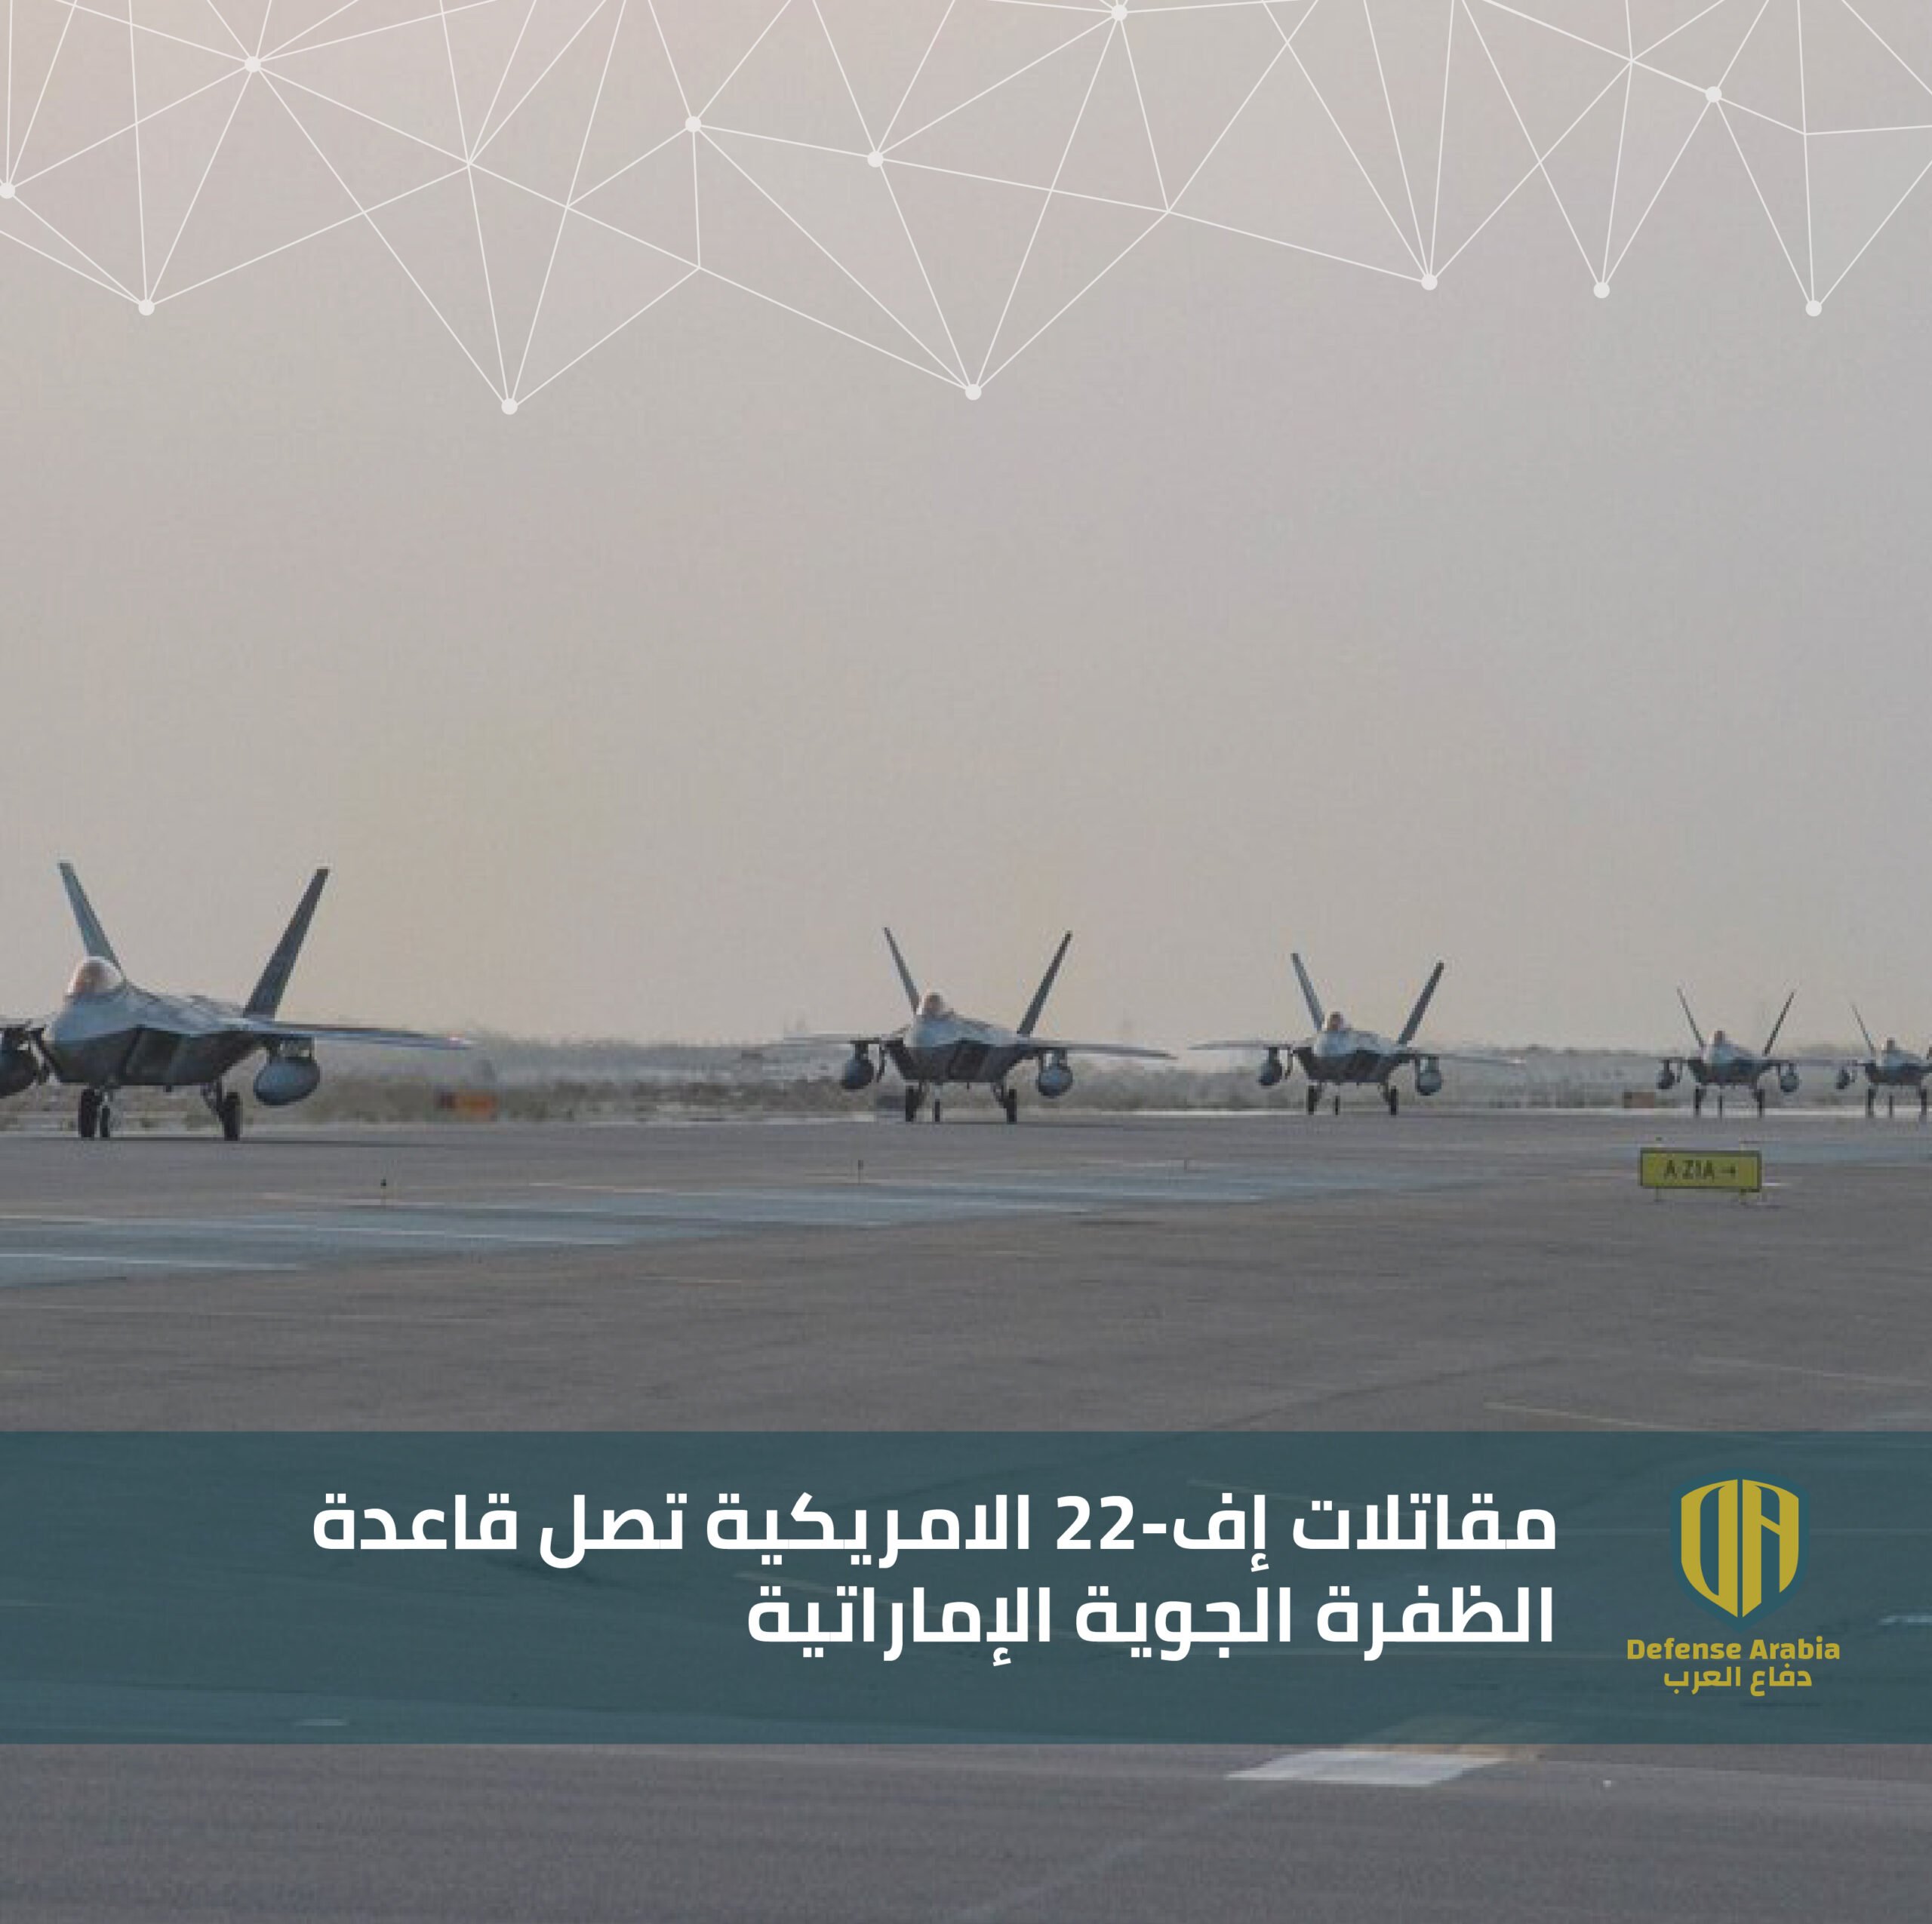 مقاتلات أمريكية من طراز &quot;إف-22&quot; تصل إلى قاعدة الظفرة الجوية الإماراتية  (صور) | Defense Arabia